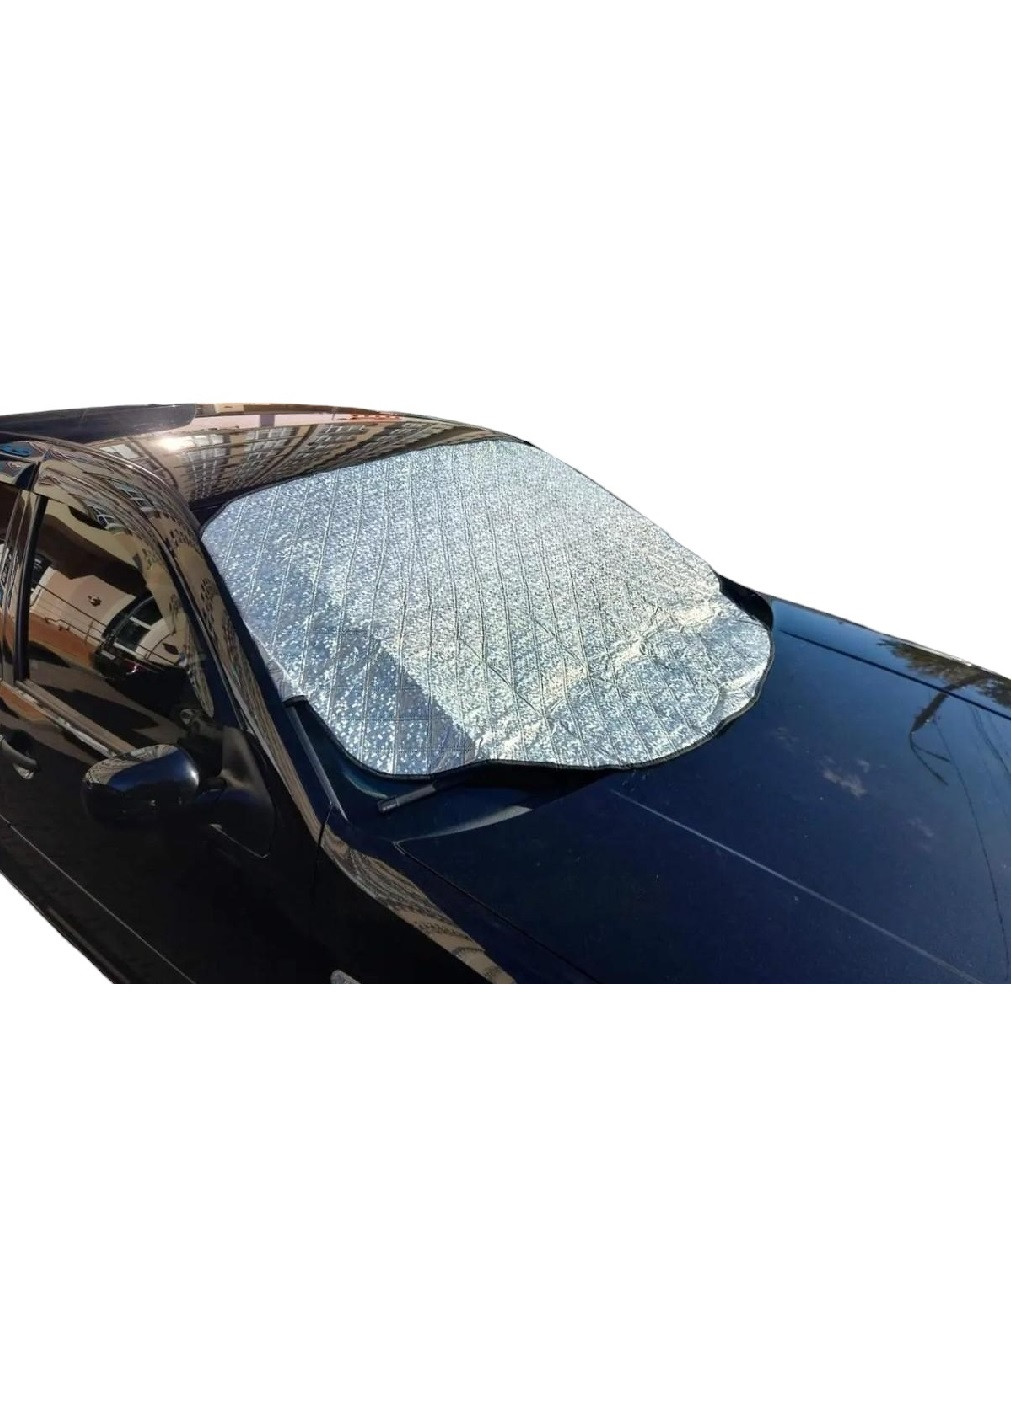 Чехол накладка накидка защитный экран на лобовое стекло машины автомобиля с магнитами 110х150 см (475728-Prob) Серая Unbranded (270827882)